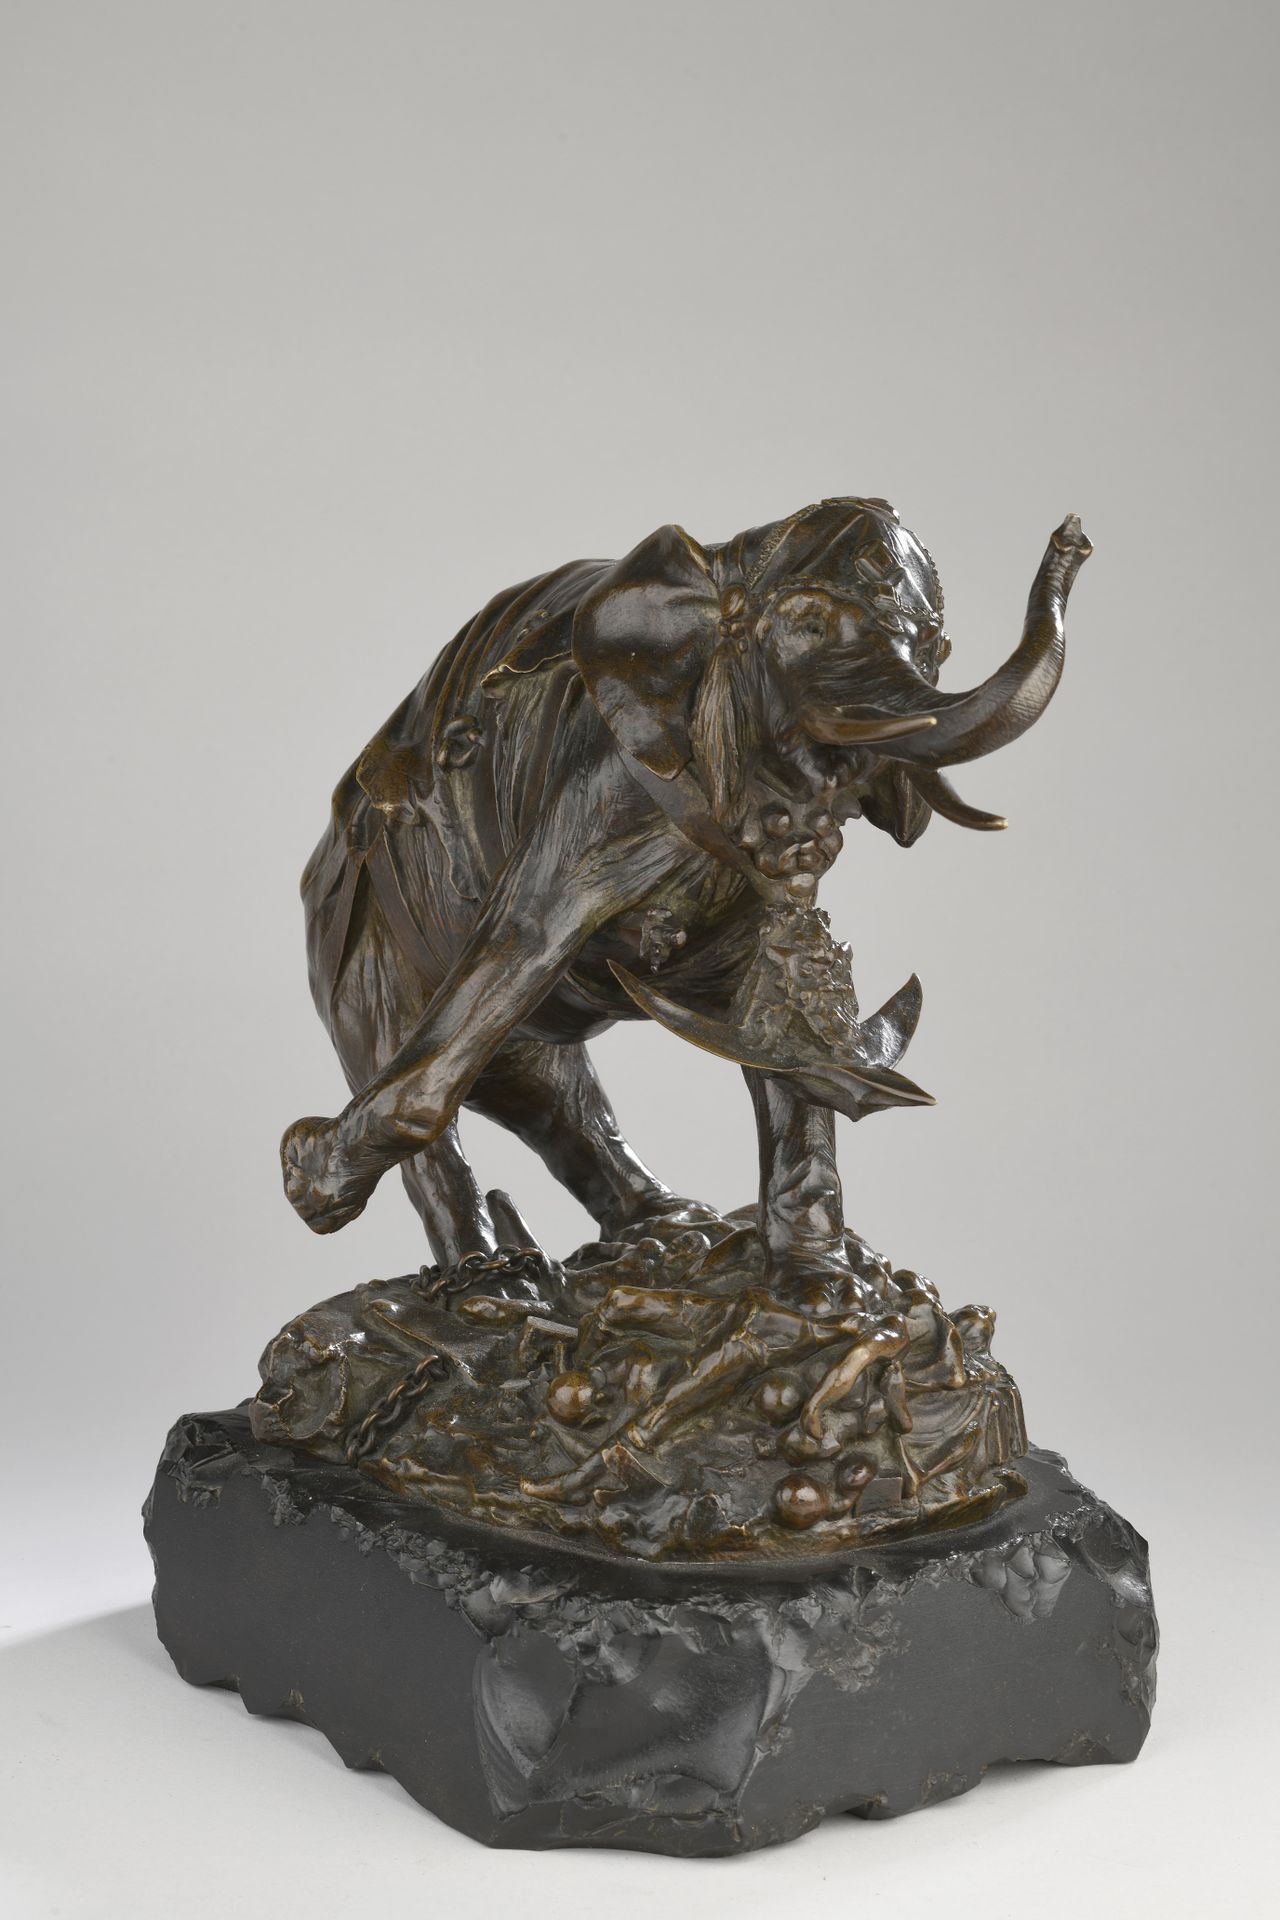 Null 泰奥多尔-里维埃尔(1857-1912) 
哈米尔卡的大象
约1900年
青铜，带有浅棕色的铜锈 
署名 "泰奥多尔-里维埃尔
盖有创始人的印章 "S&hellip;